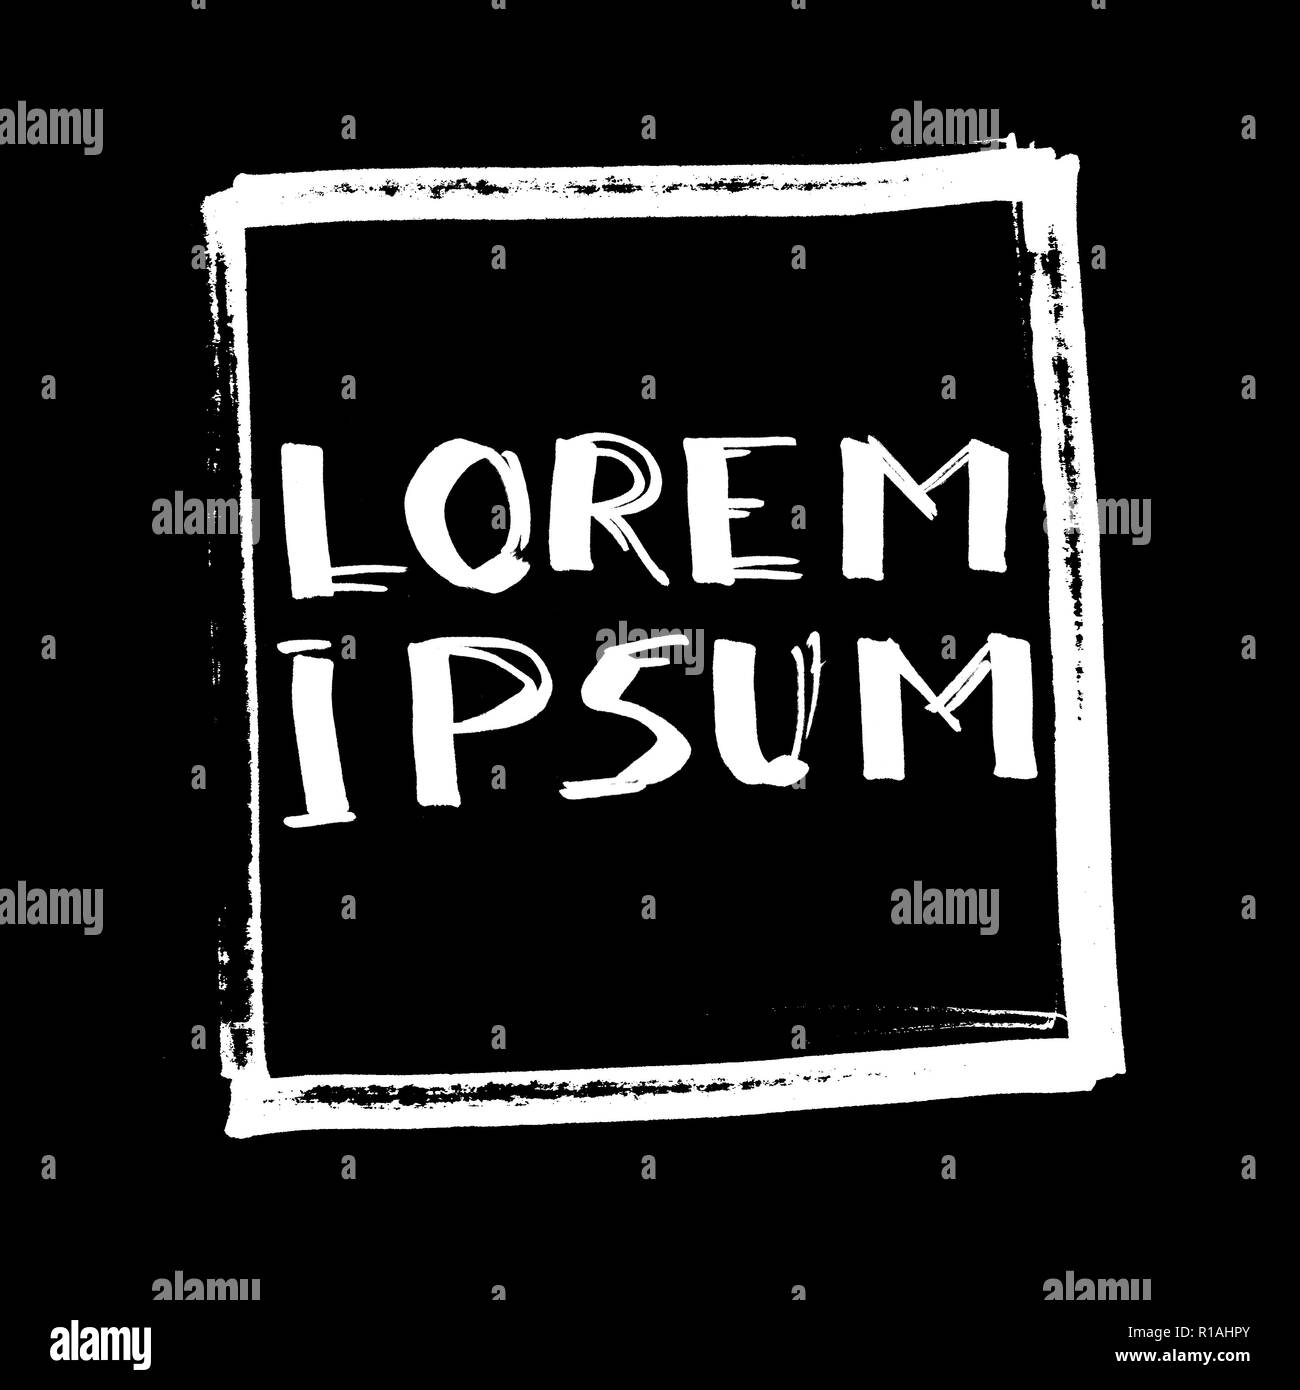 Lorem Ipsum (Échantillon de texte). Lettrage, conception de la bande dessinée pour t-shirt ou un poster, fond noir Banque D'Images